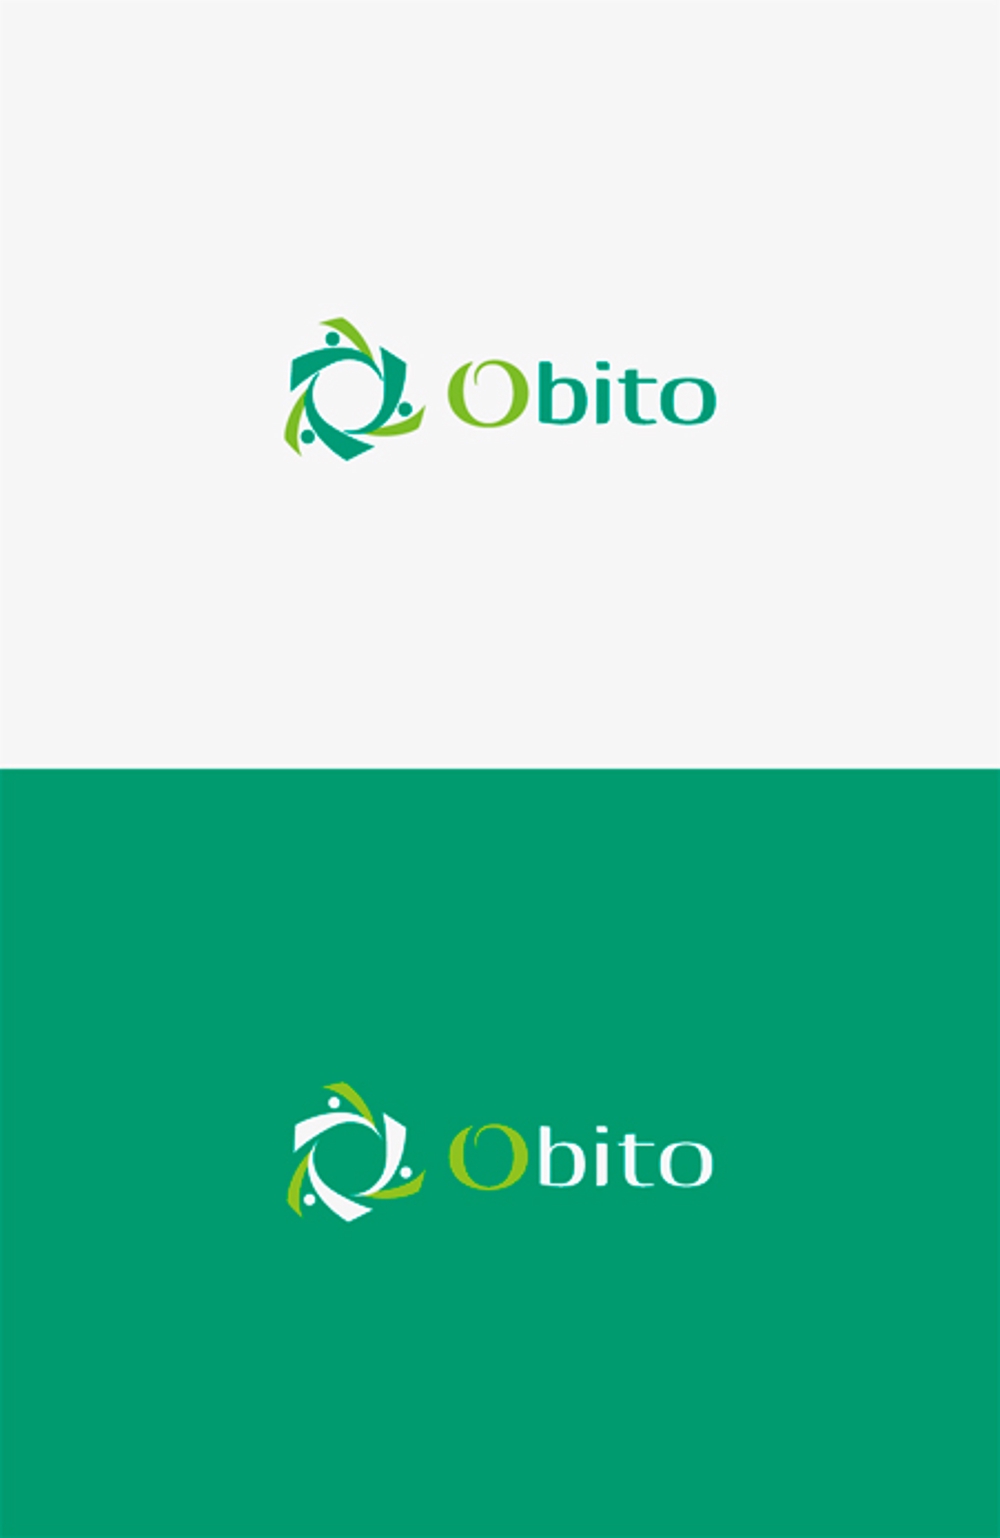 ヘルスケアの「輪」をリアルとオンライン両面から広げる企業「株式会社Obito」のロゴ